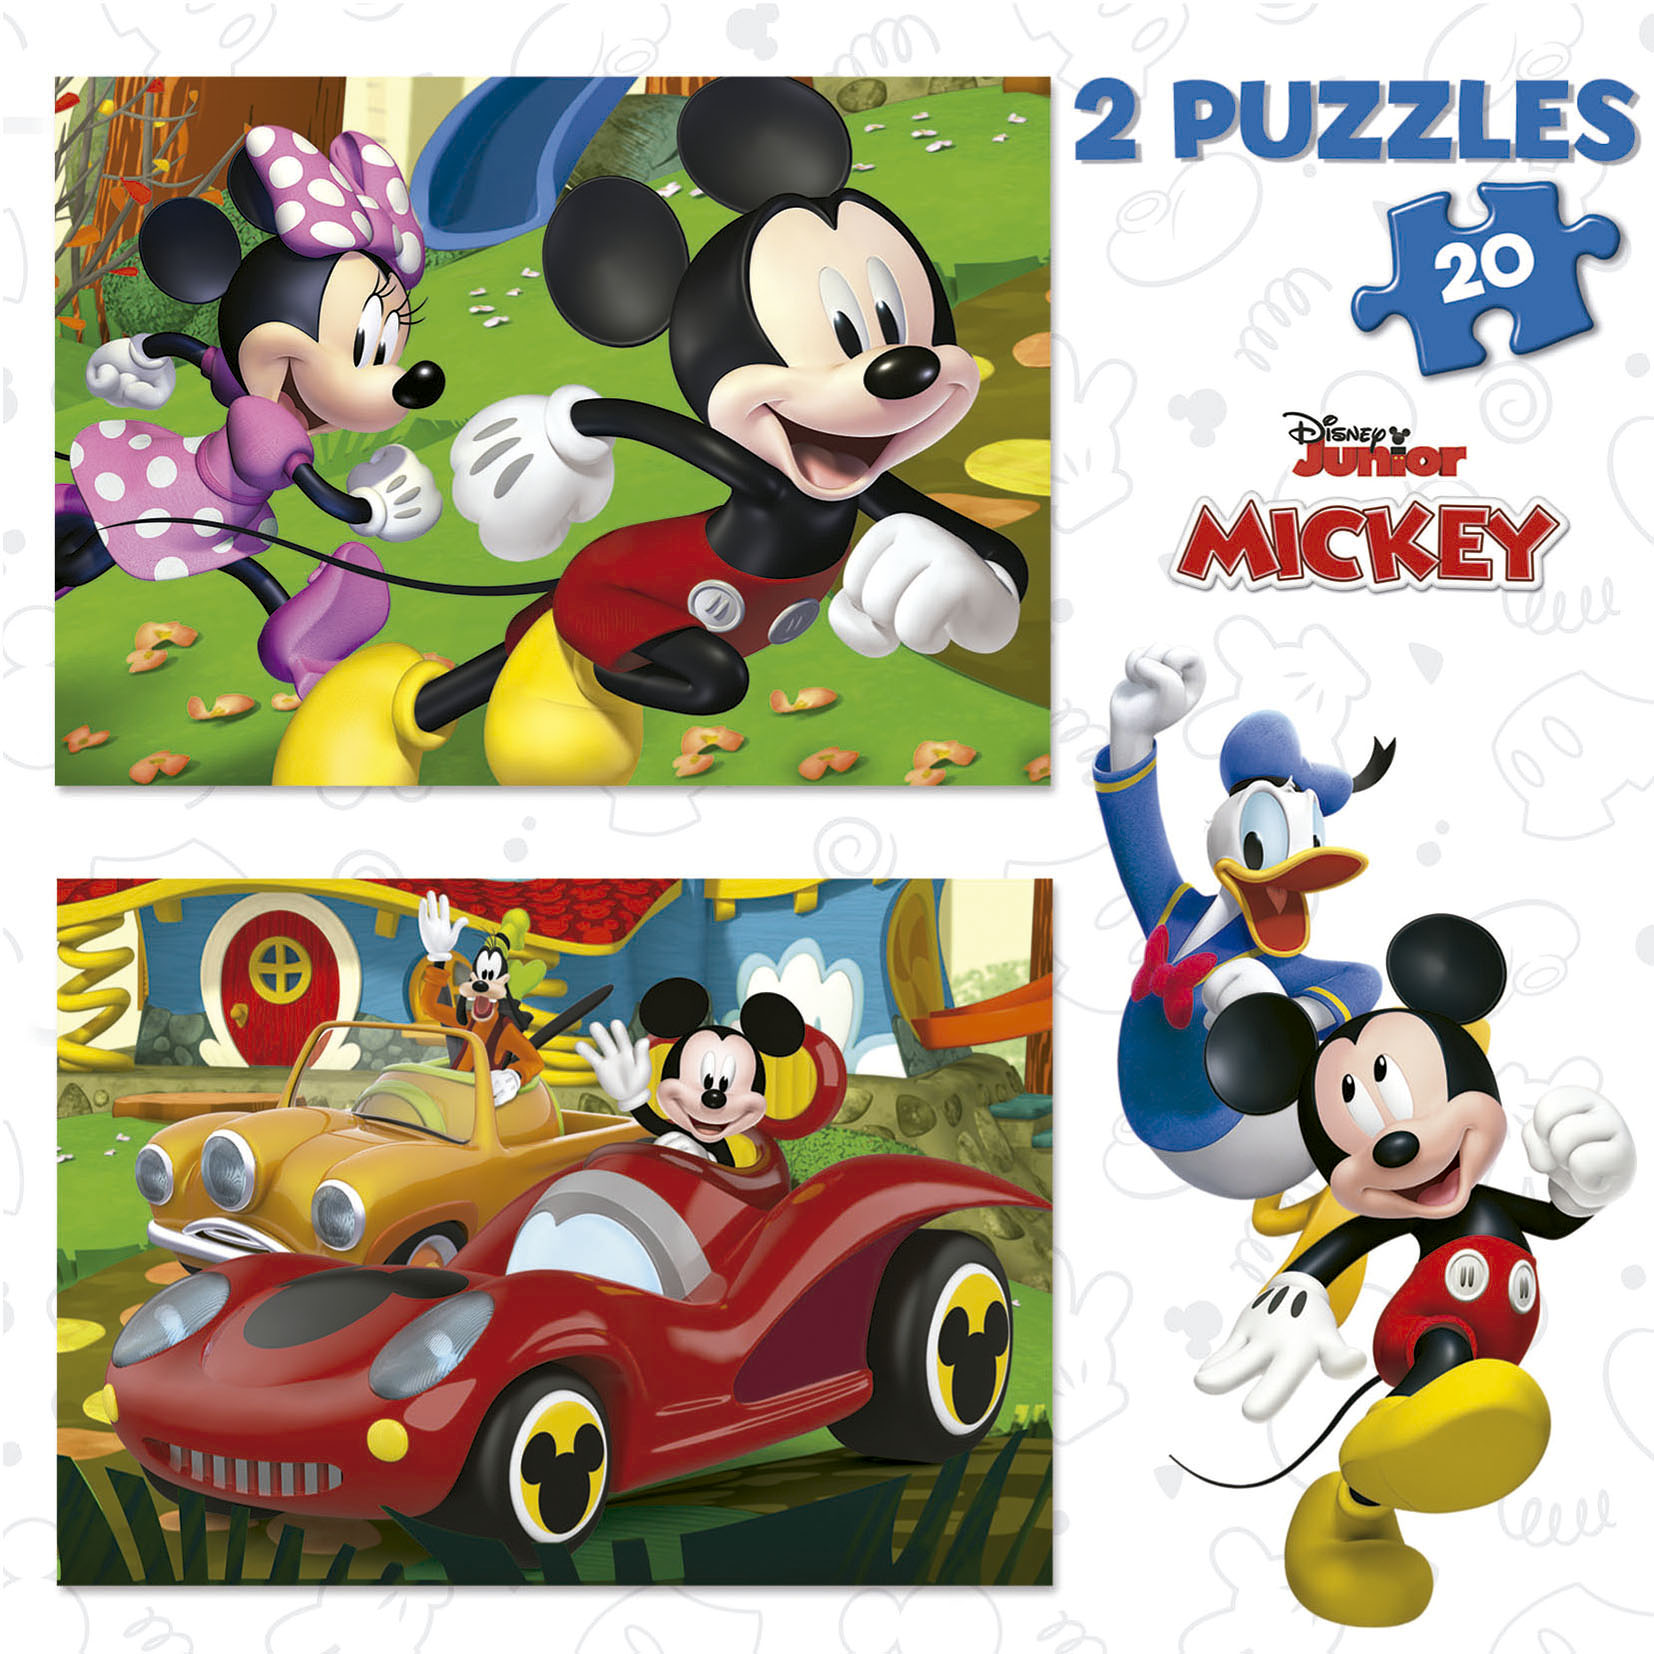 Educa borras Los Colores Mickey And Friends Wooden Puzzle Golden